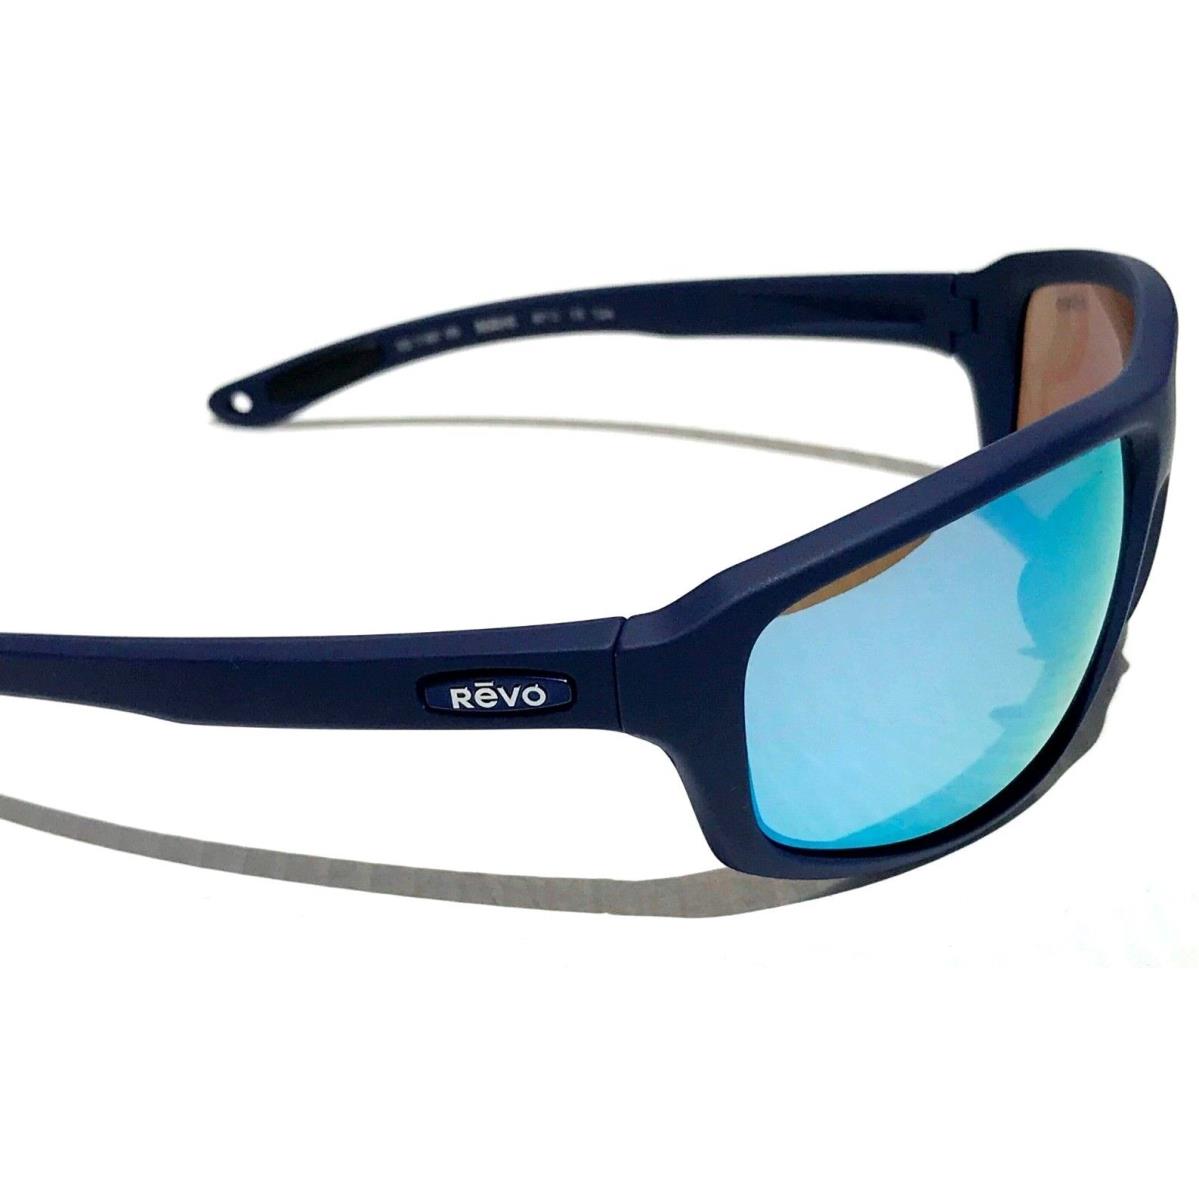 Revo sunglasses Mahi - Blue Frame, Blue Lens